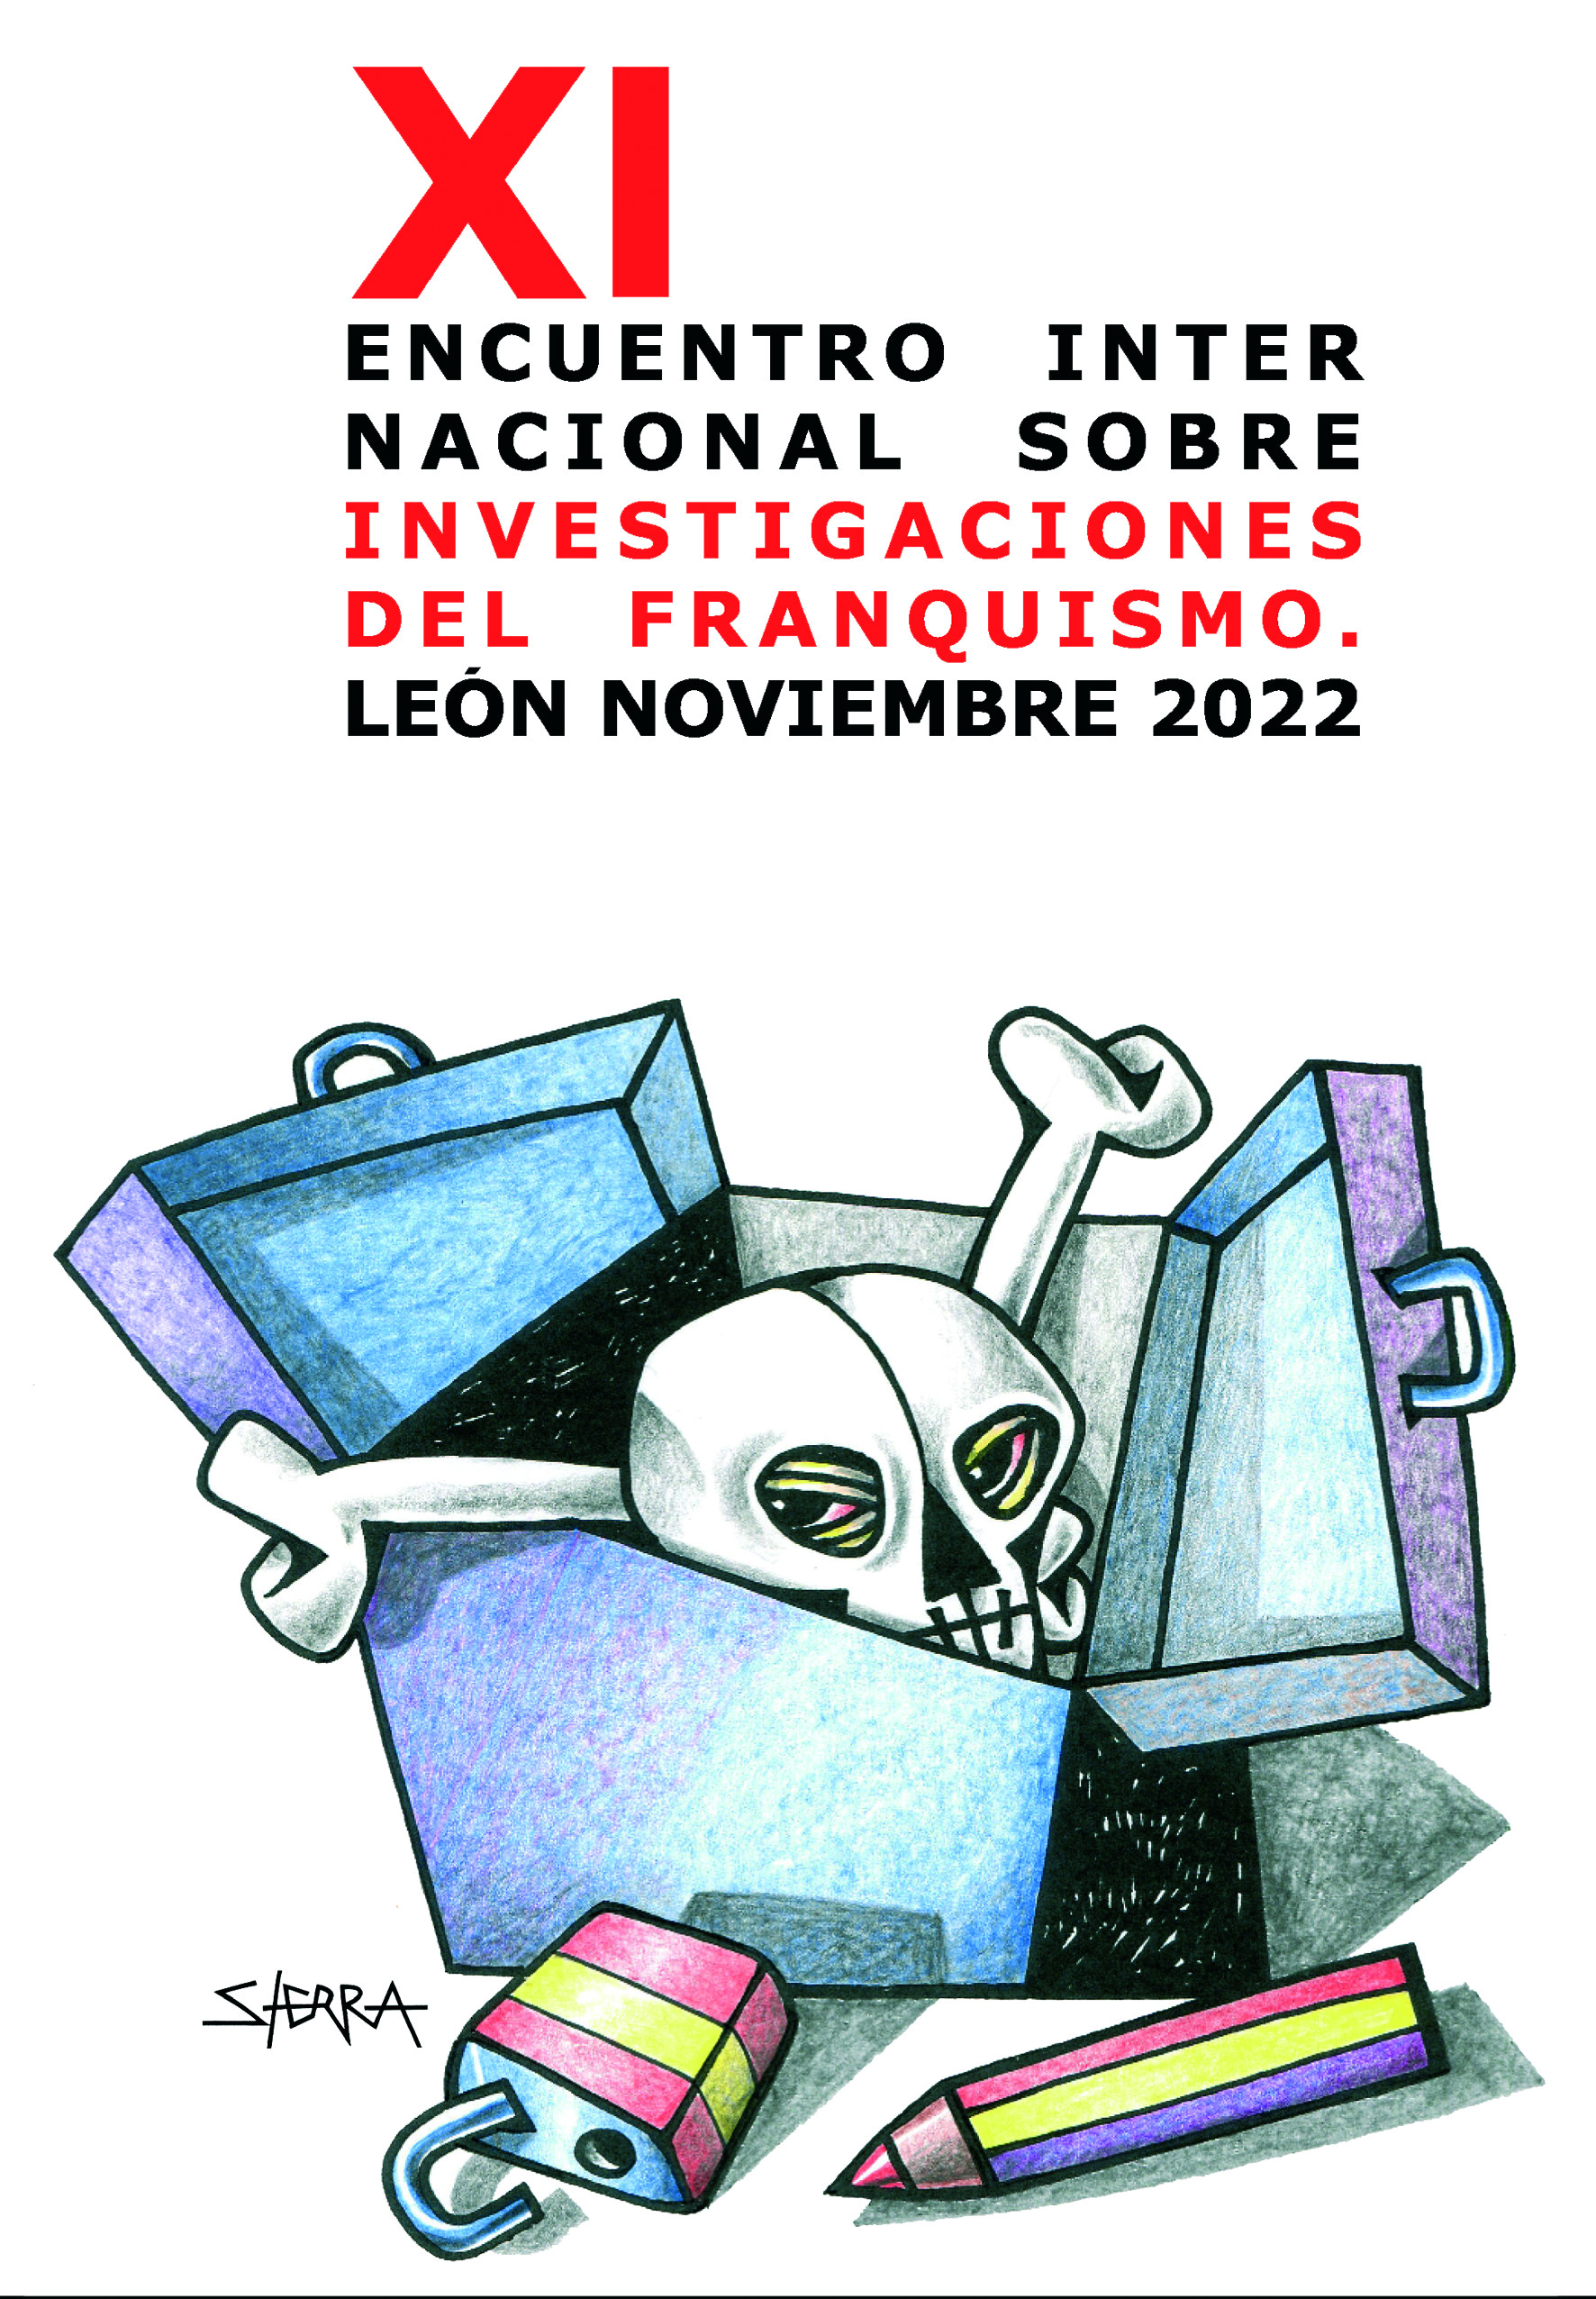 11 Encuentro Internacional sobre Investigaciones del Franquismo. León, noviembre 2022